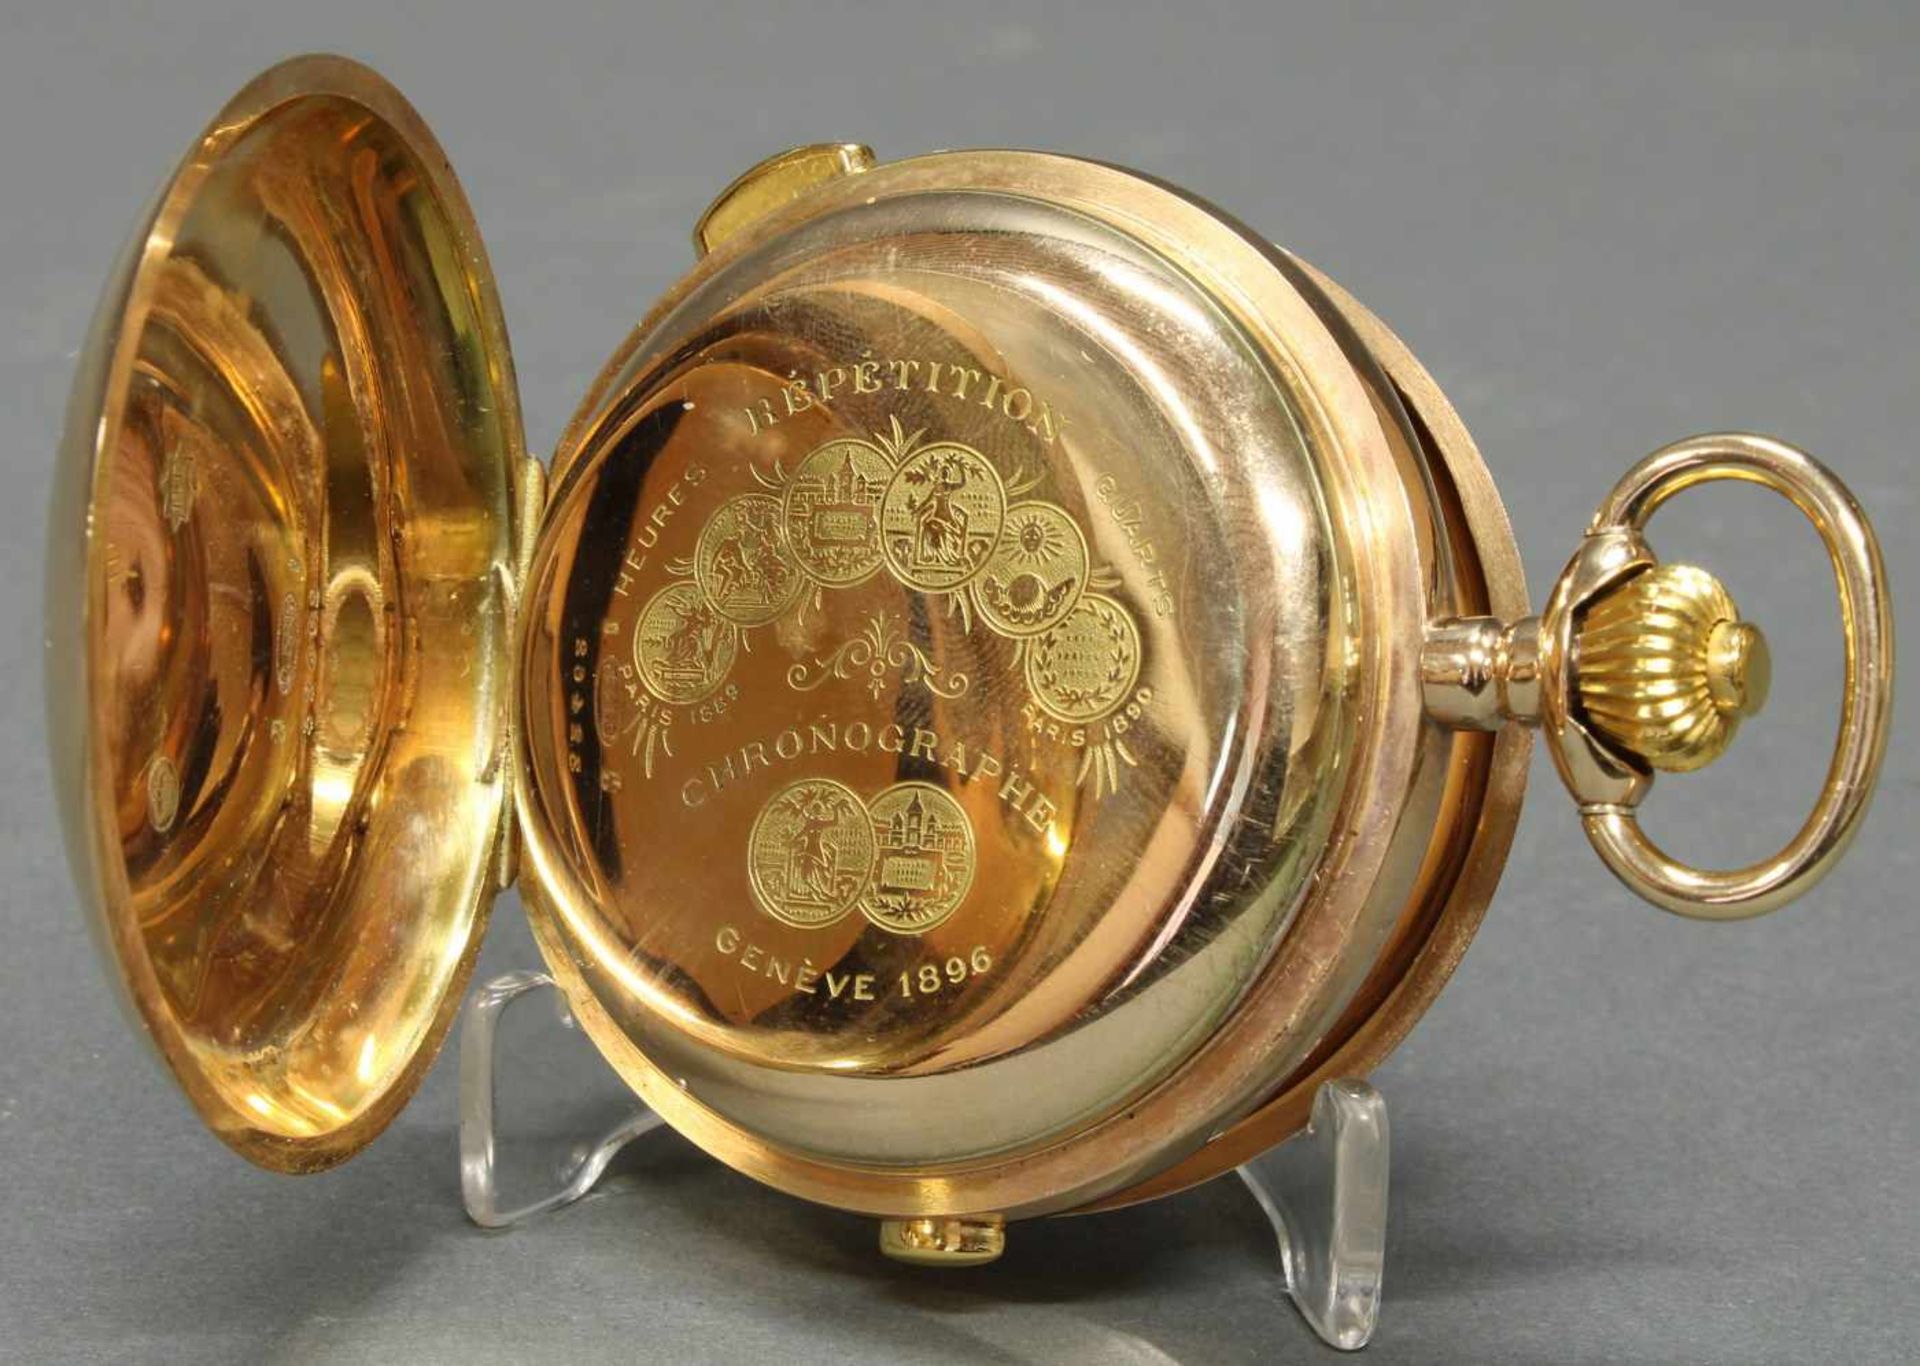 Herrentaschenuhr, Savonette, um 1900, 1/4-Stunden-Repetition, Chronograph, GG 585, Staubdeckel Gold, - Bild 4 aus 6